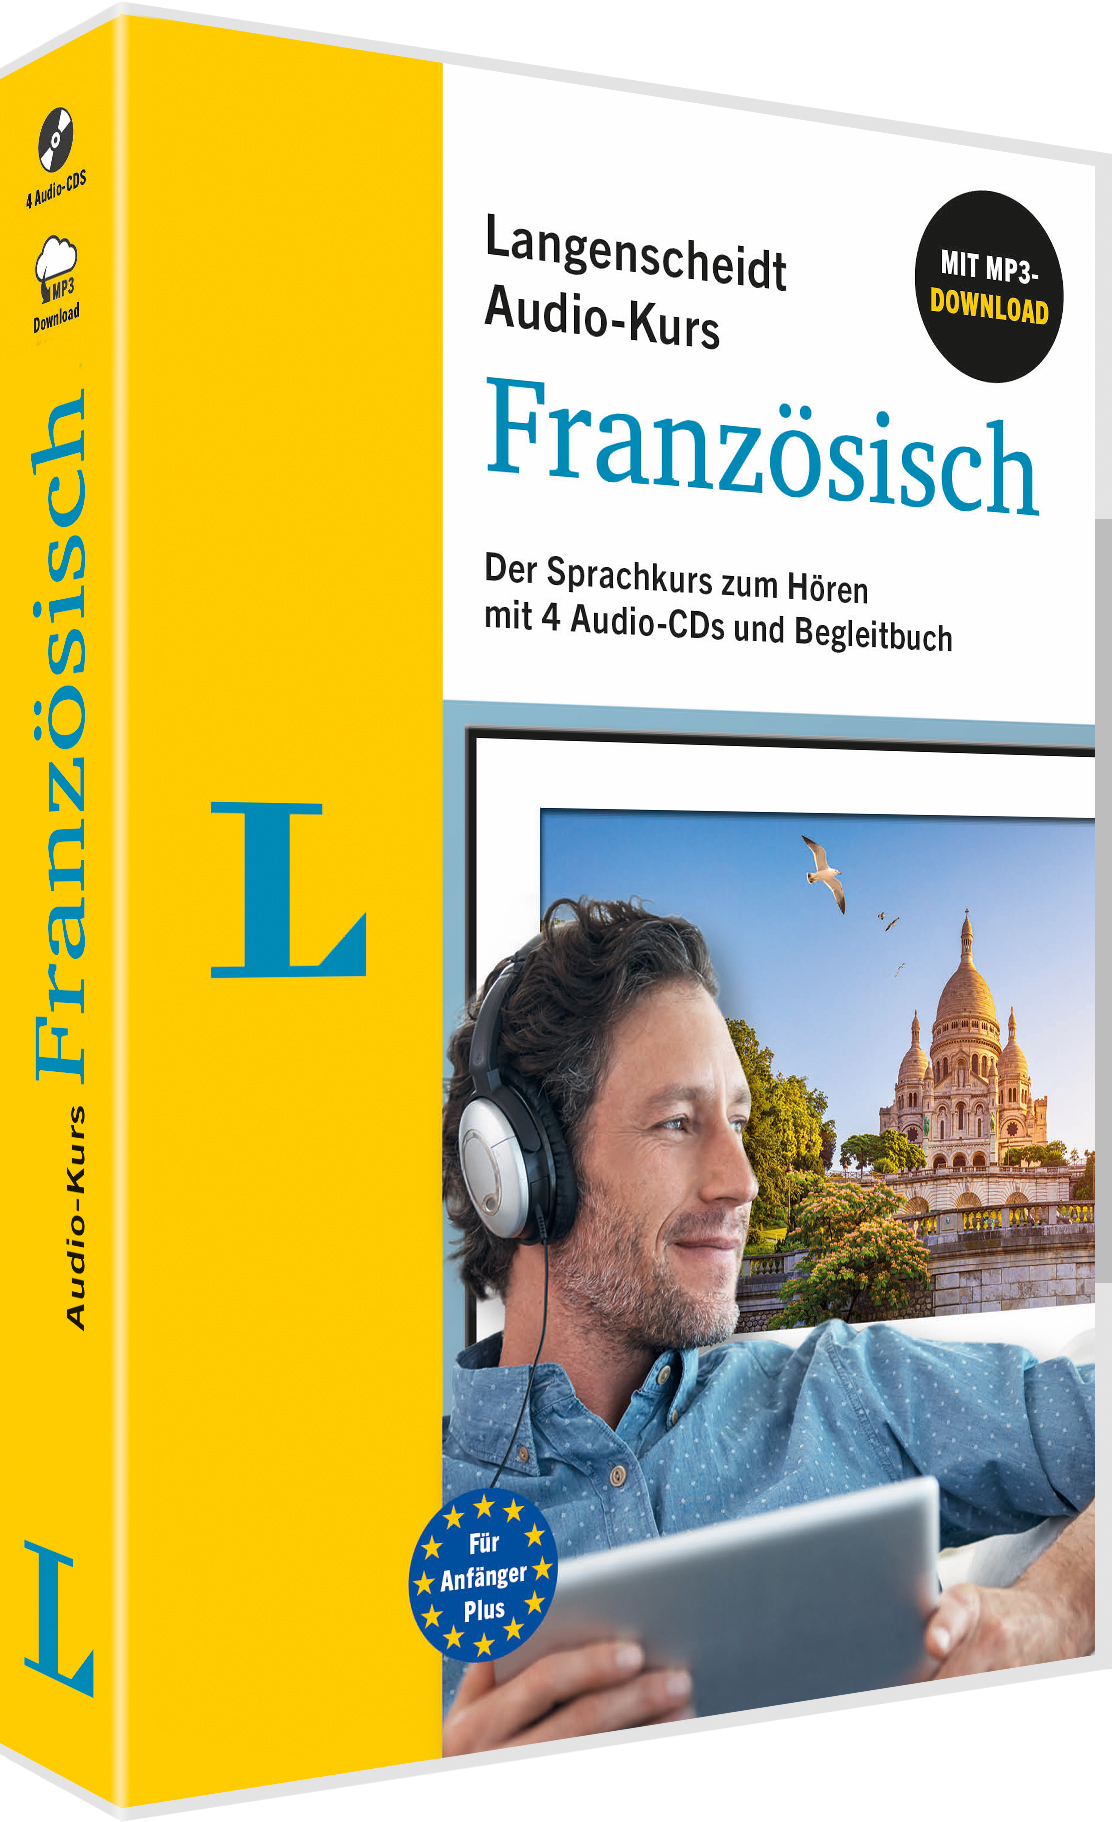 Langenscheidt Audio-Kurs Französisch